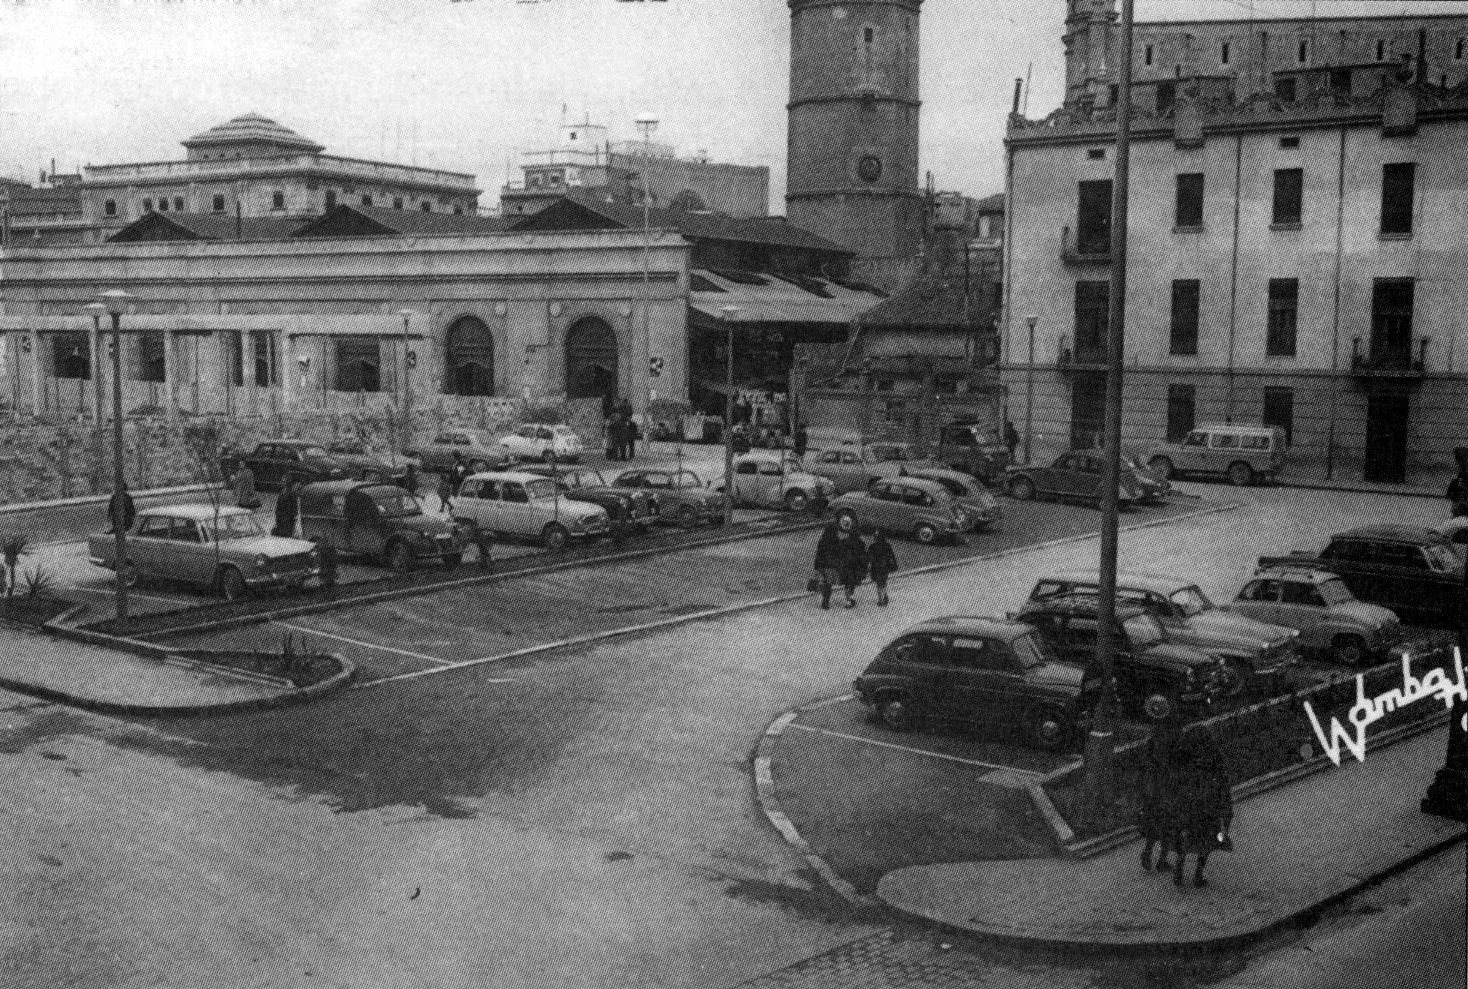 Los coches podían aparcar en la plaza Santa Clara, como muestra esta imagen.